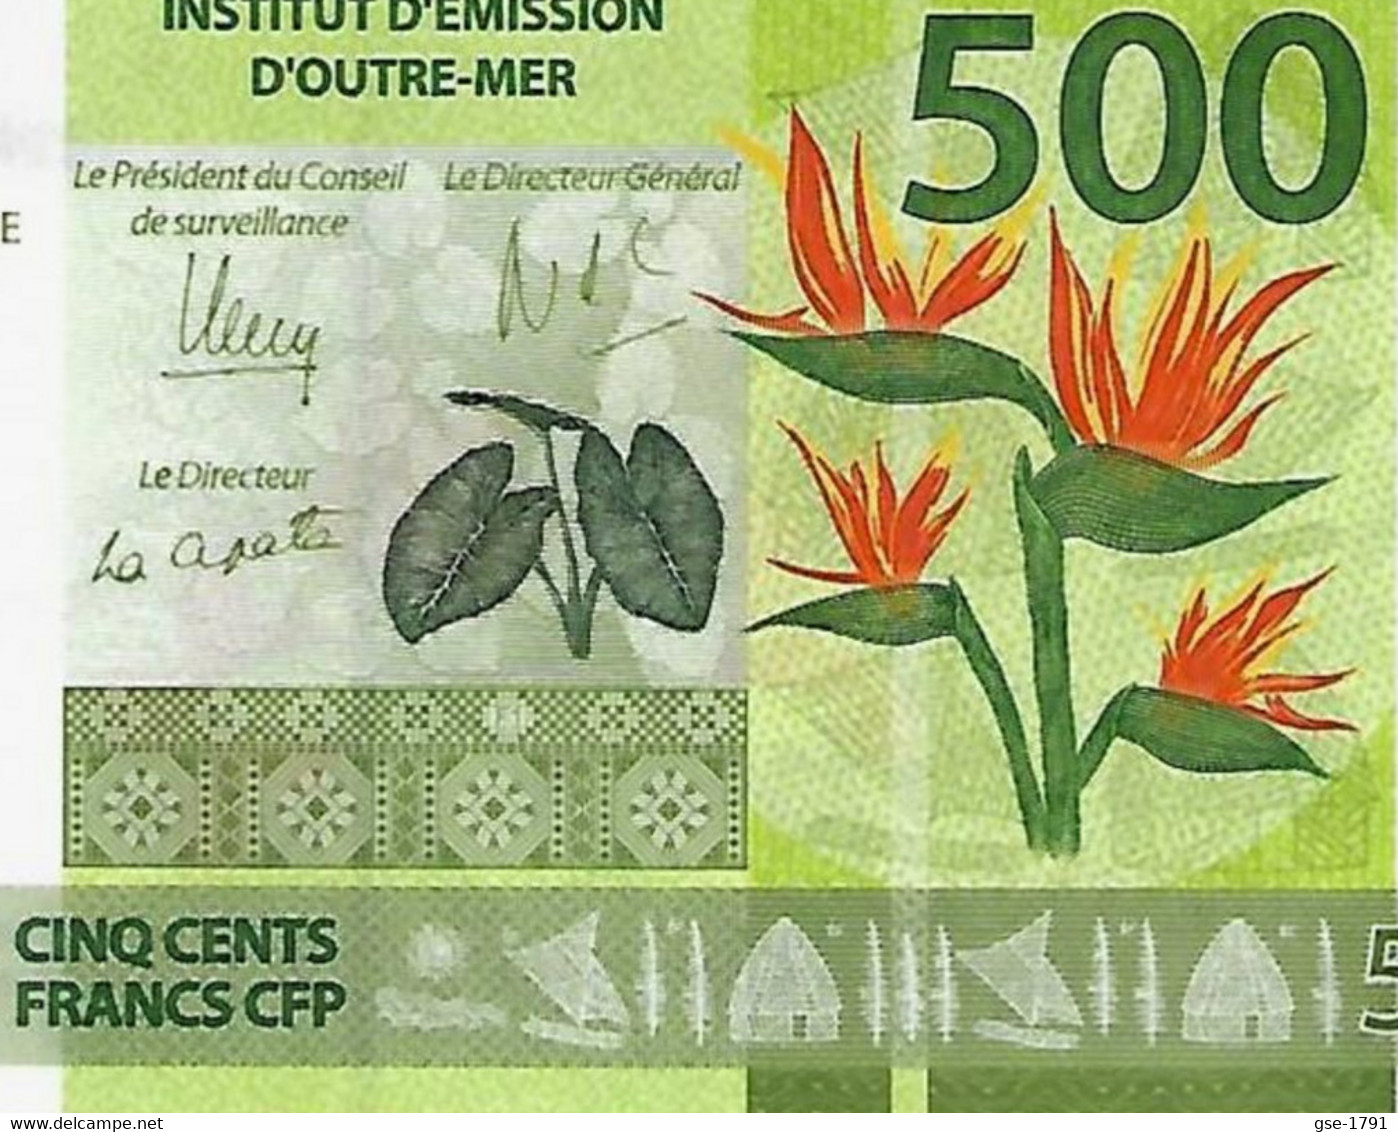 IEOM : Nlle CALEDONIE, TAHITI ,WALLIS  Nouveaux  Billets De 500 Francs 2014 1ère émission NEUF - Französisch-Pazifik Gebiete (1992-...)